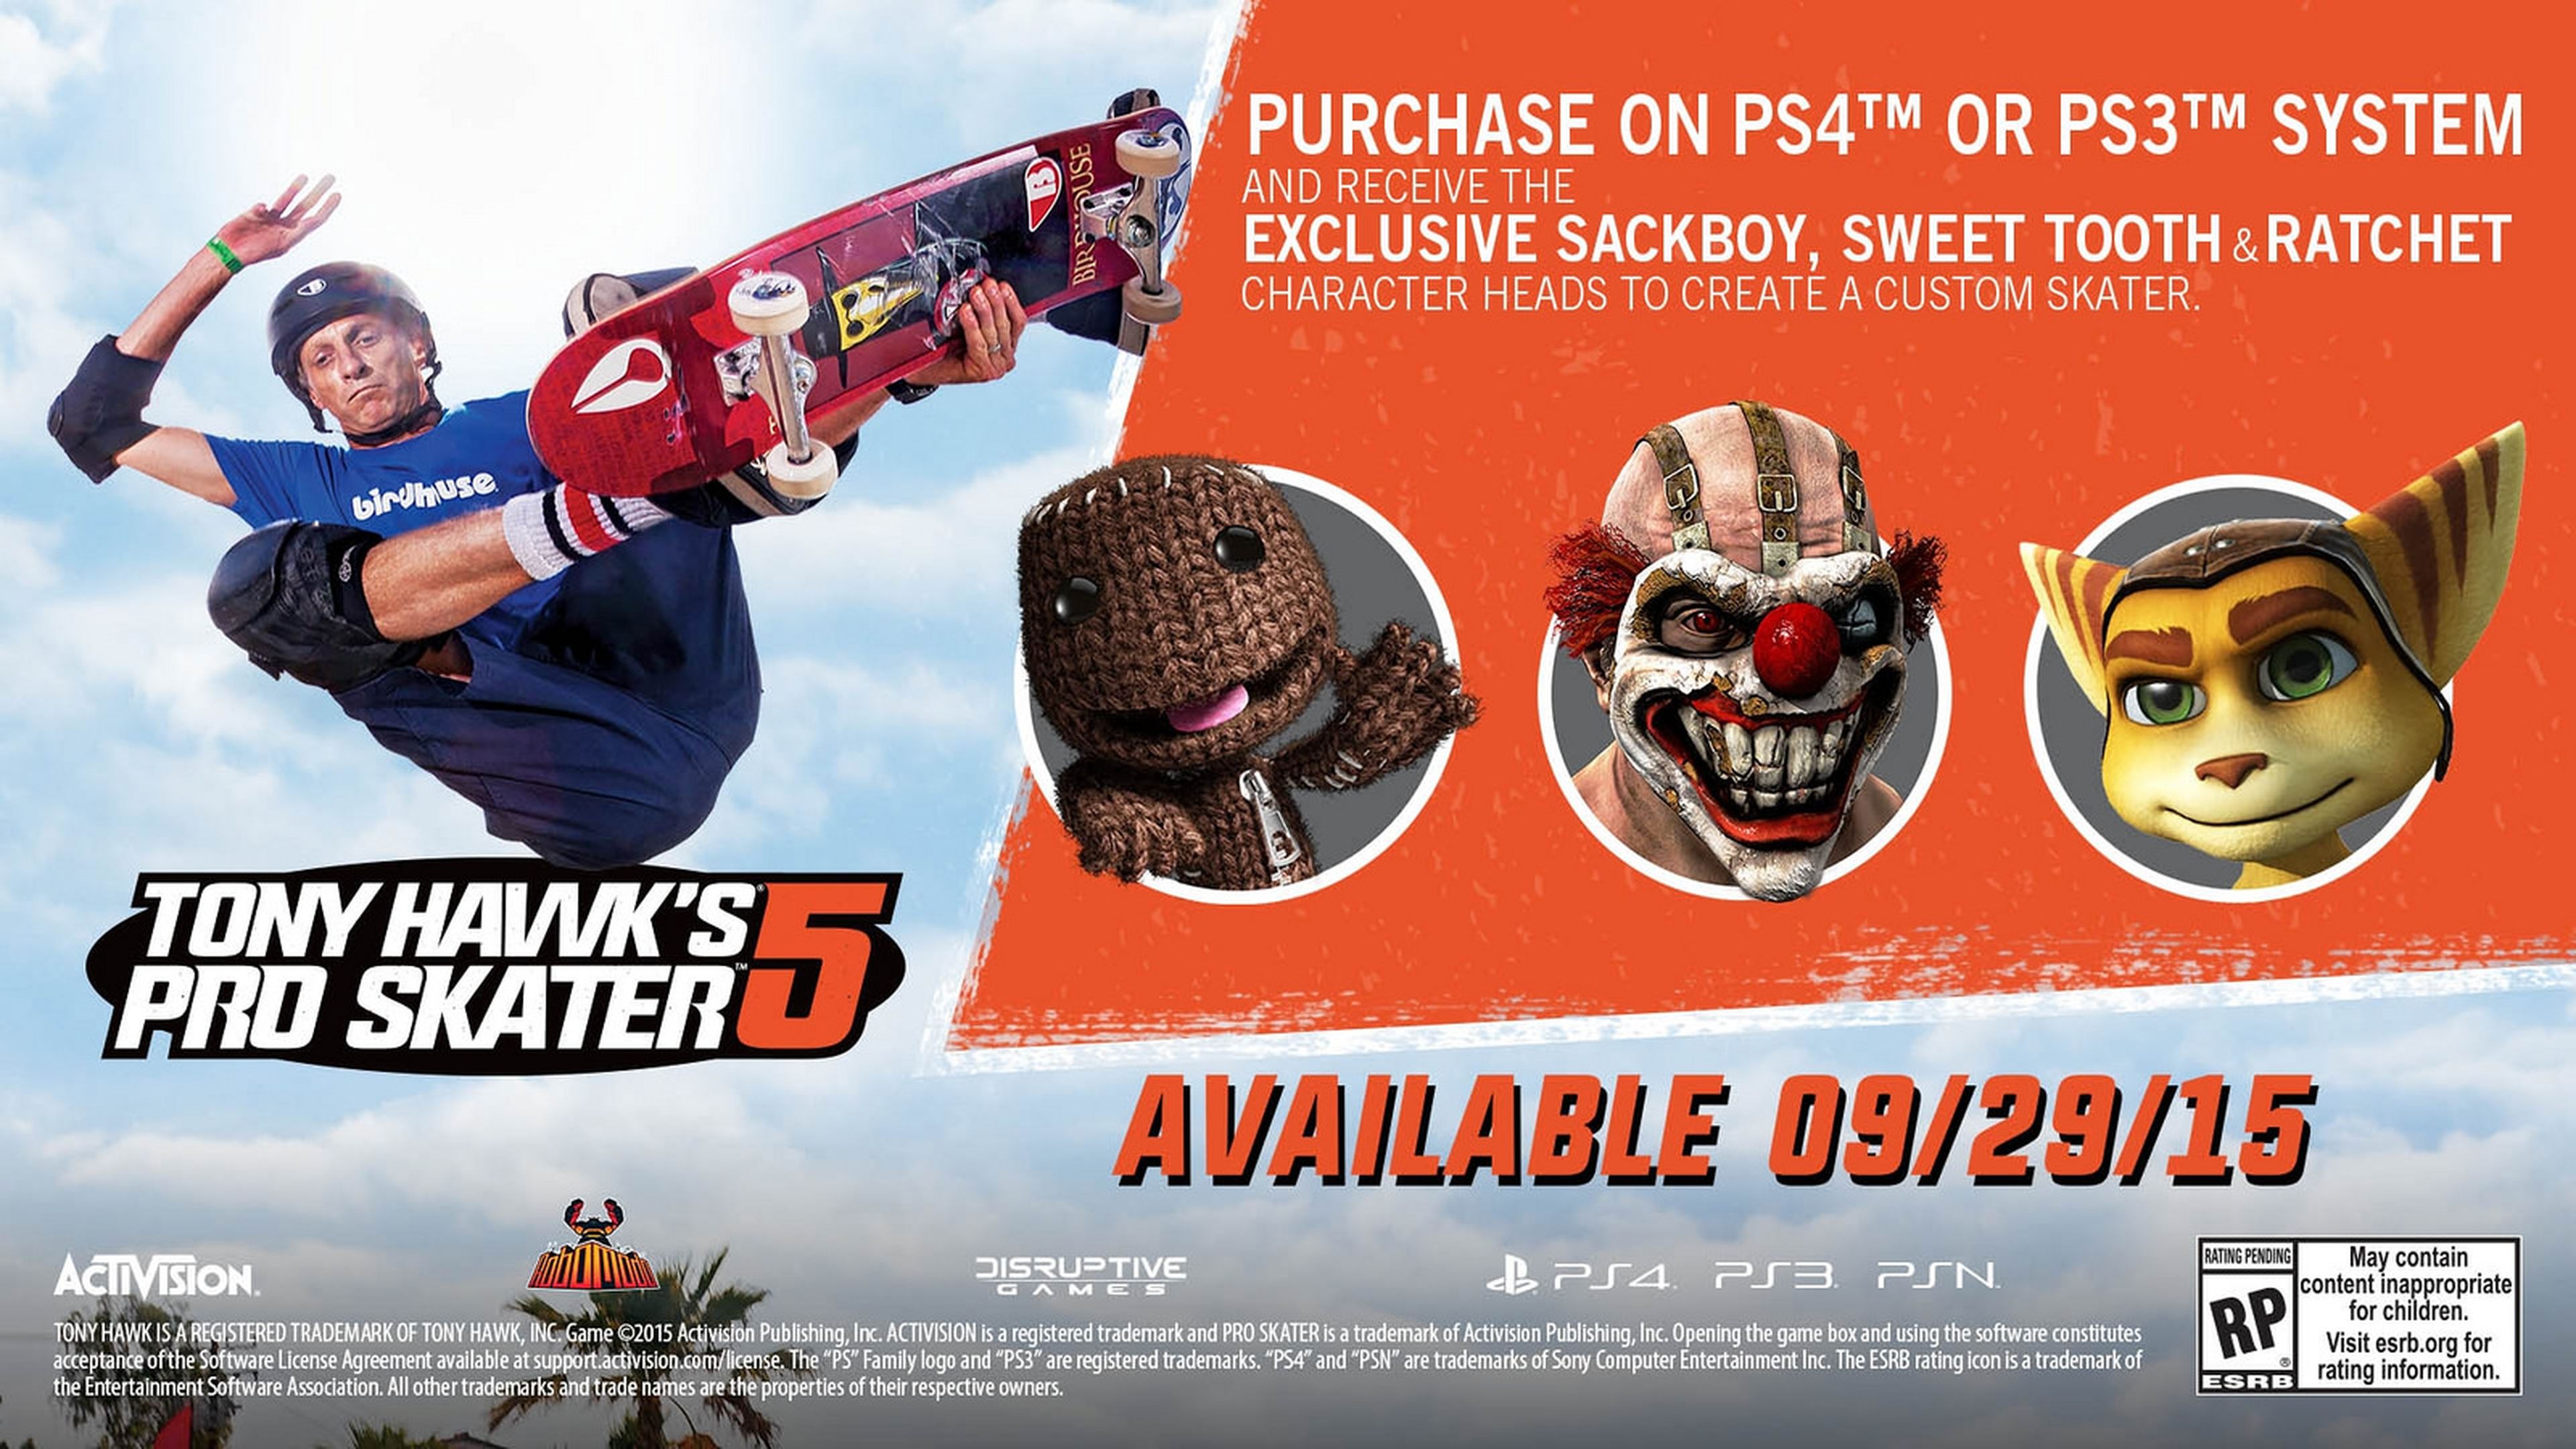 Tony Hawk's Pro Skater 5, detalles del online y cameos en PS4 y PS3